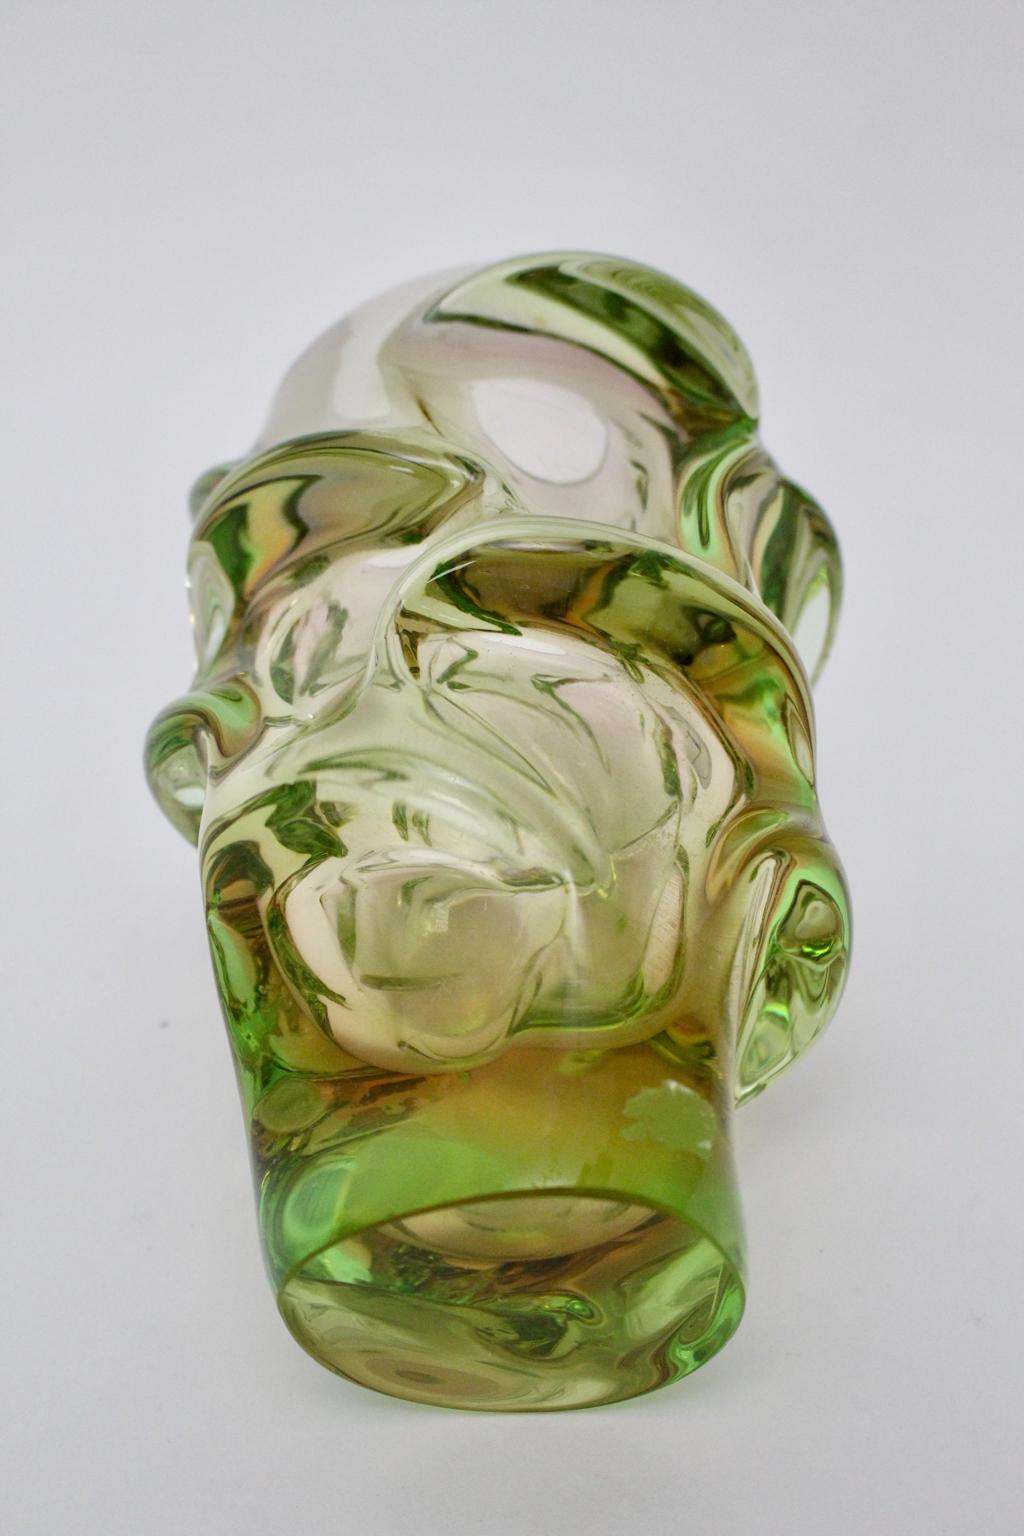 skrdlovice glass vase